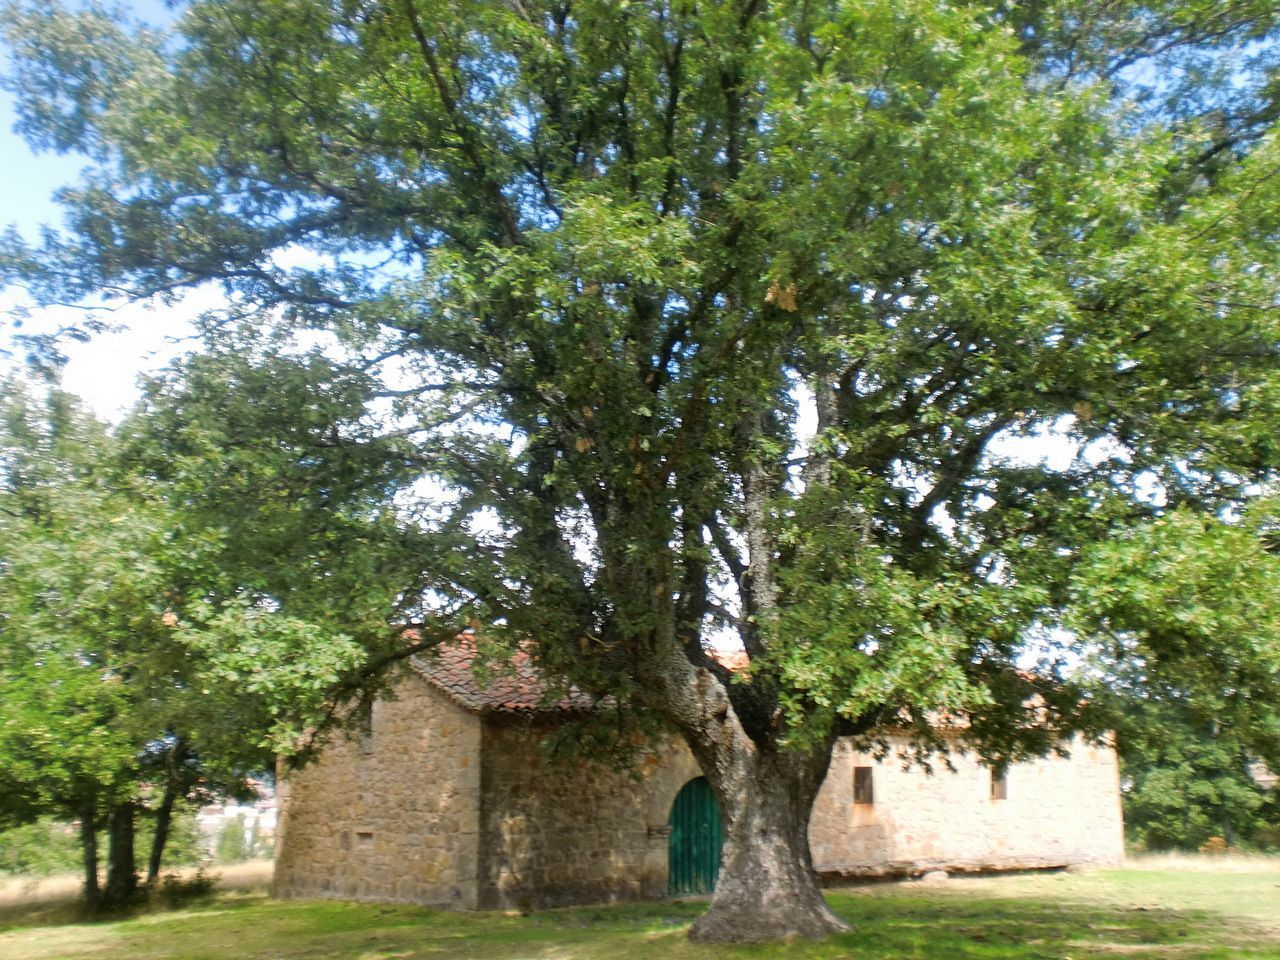 Robledal de rebollo (Quercus pyrenaica)